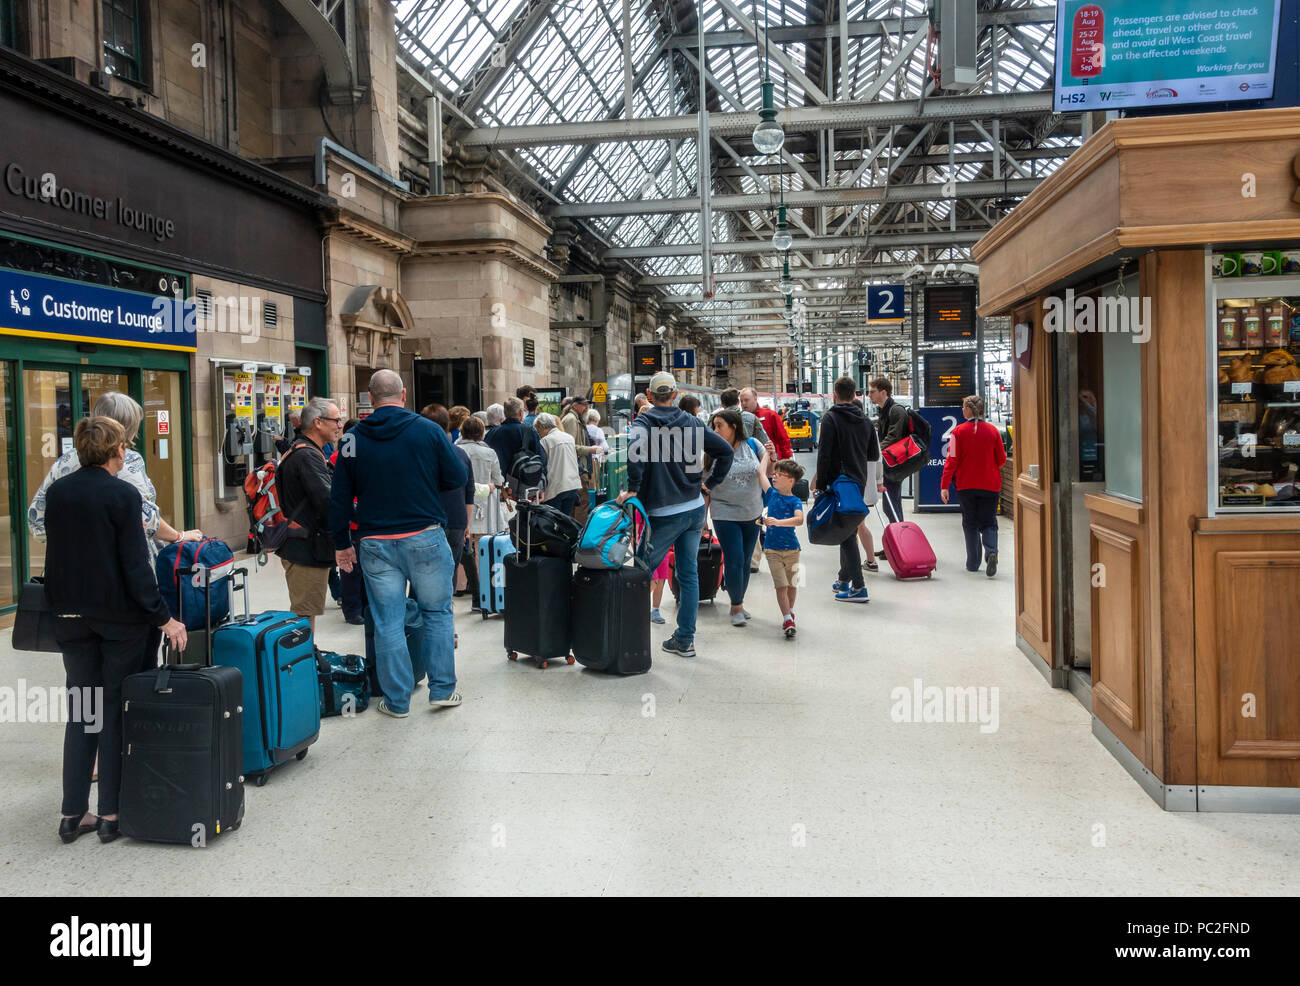 Passagiere queuing Board eine Jungfrau Zug vom Bahnsteig 1 in Glasgow Central Station zu. Zug Reisen, rollenden Gepäck, stehend, wartend in Zeile Stockfoto